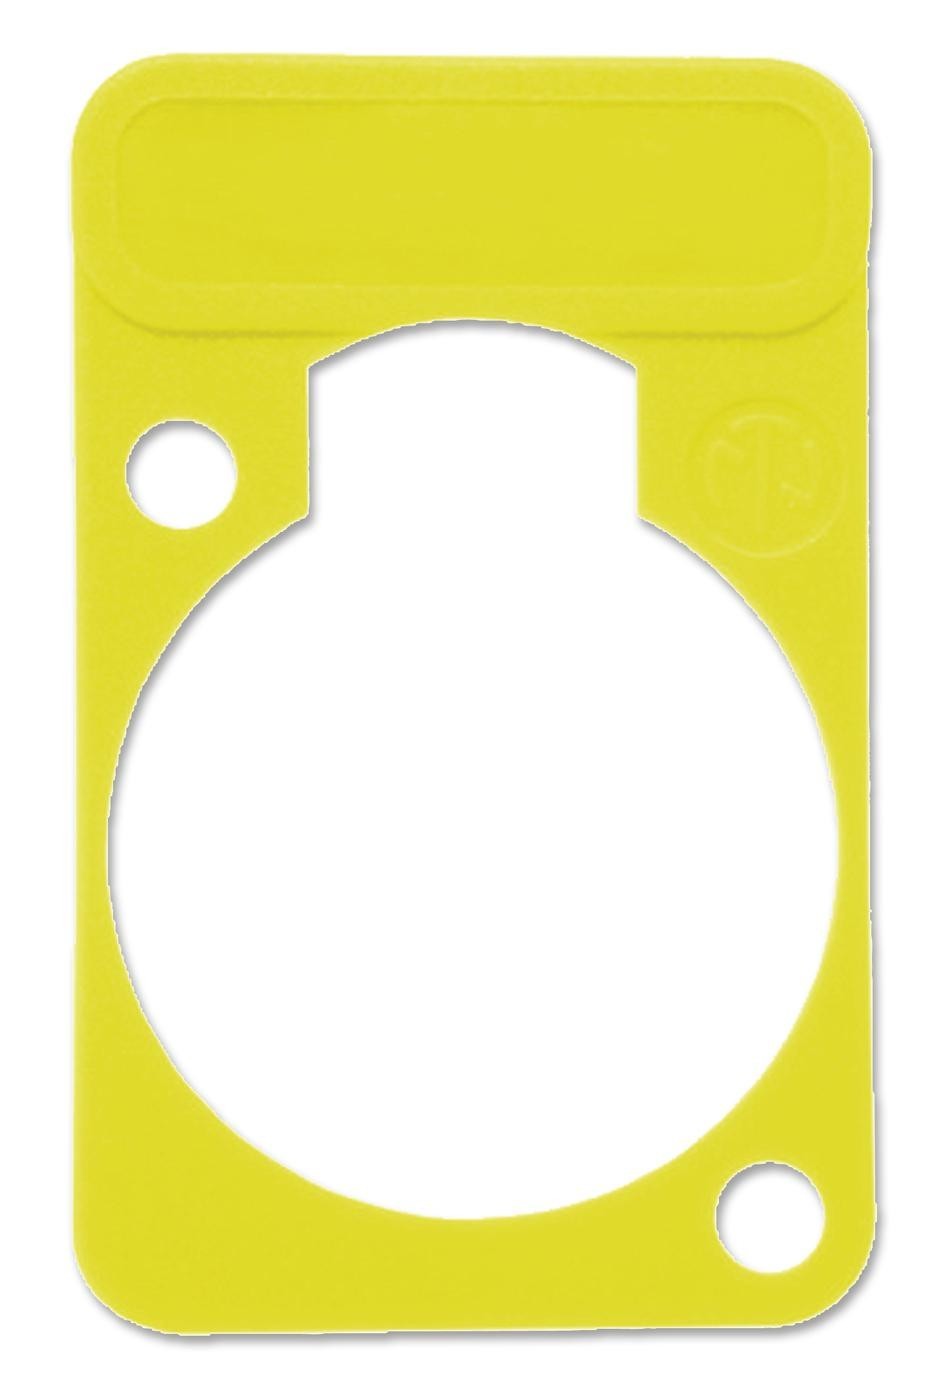 Neutrik Dss-Yellow Plate, D-Shell, Yellow